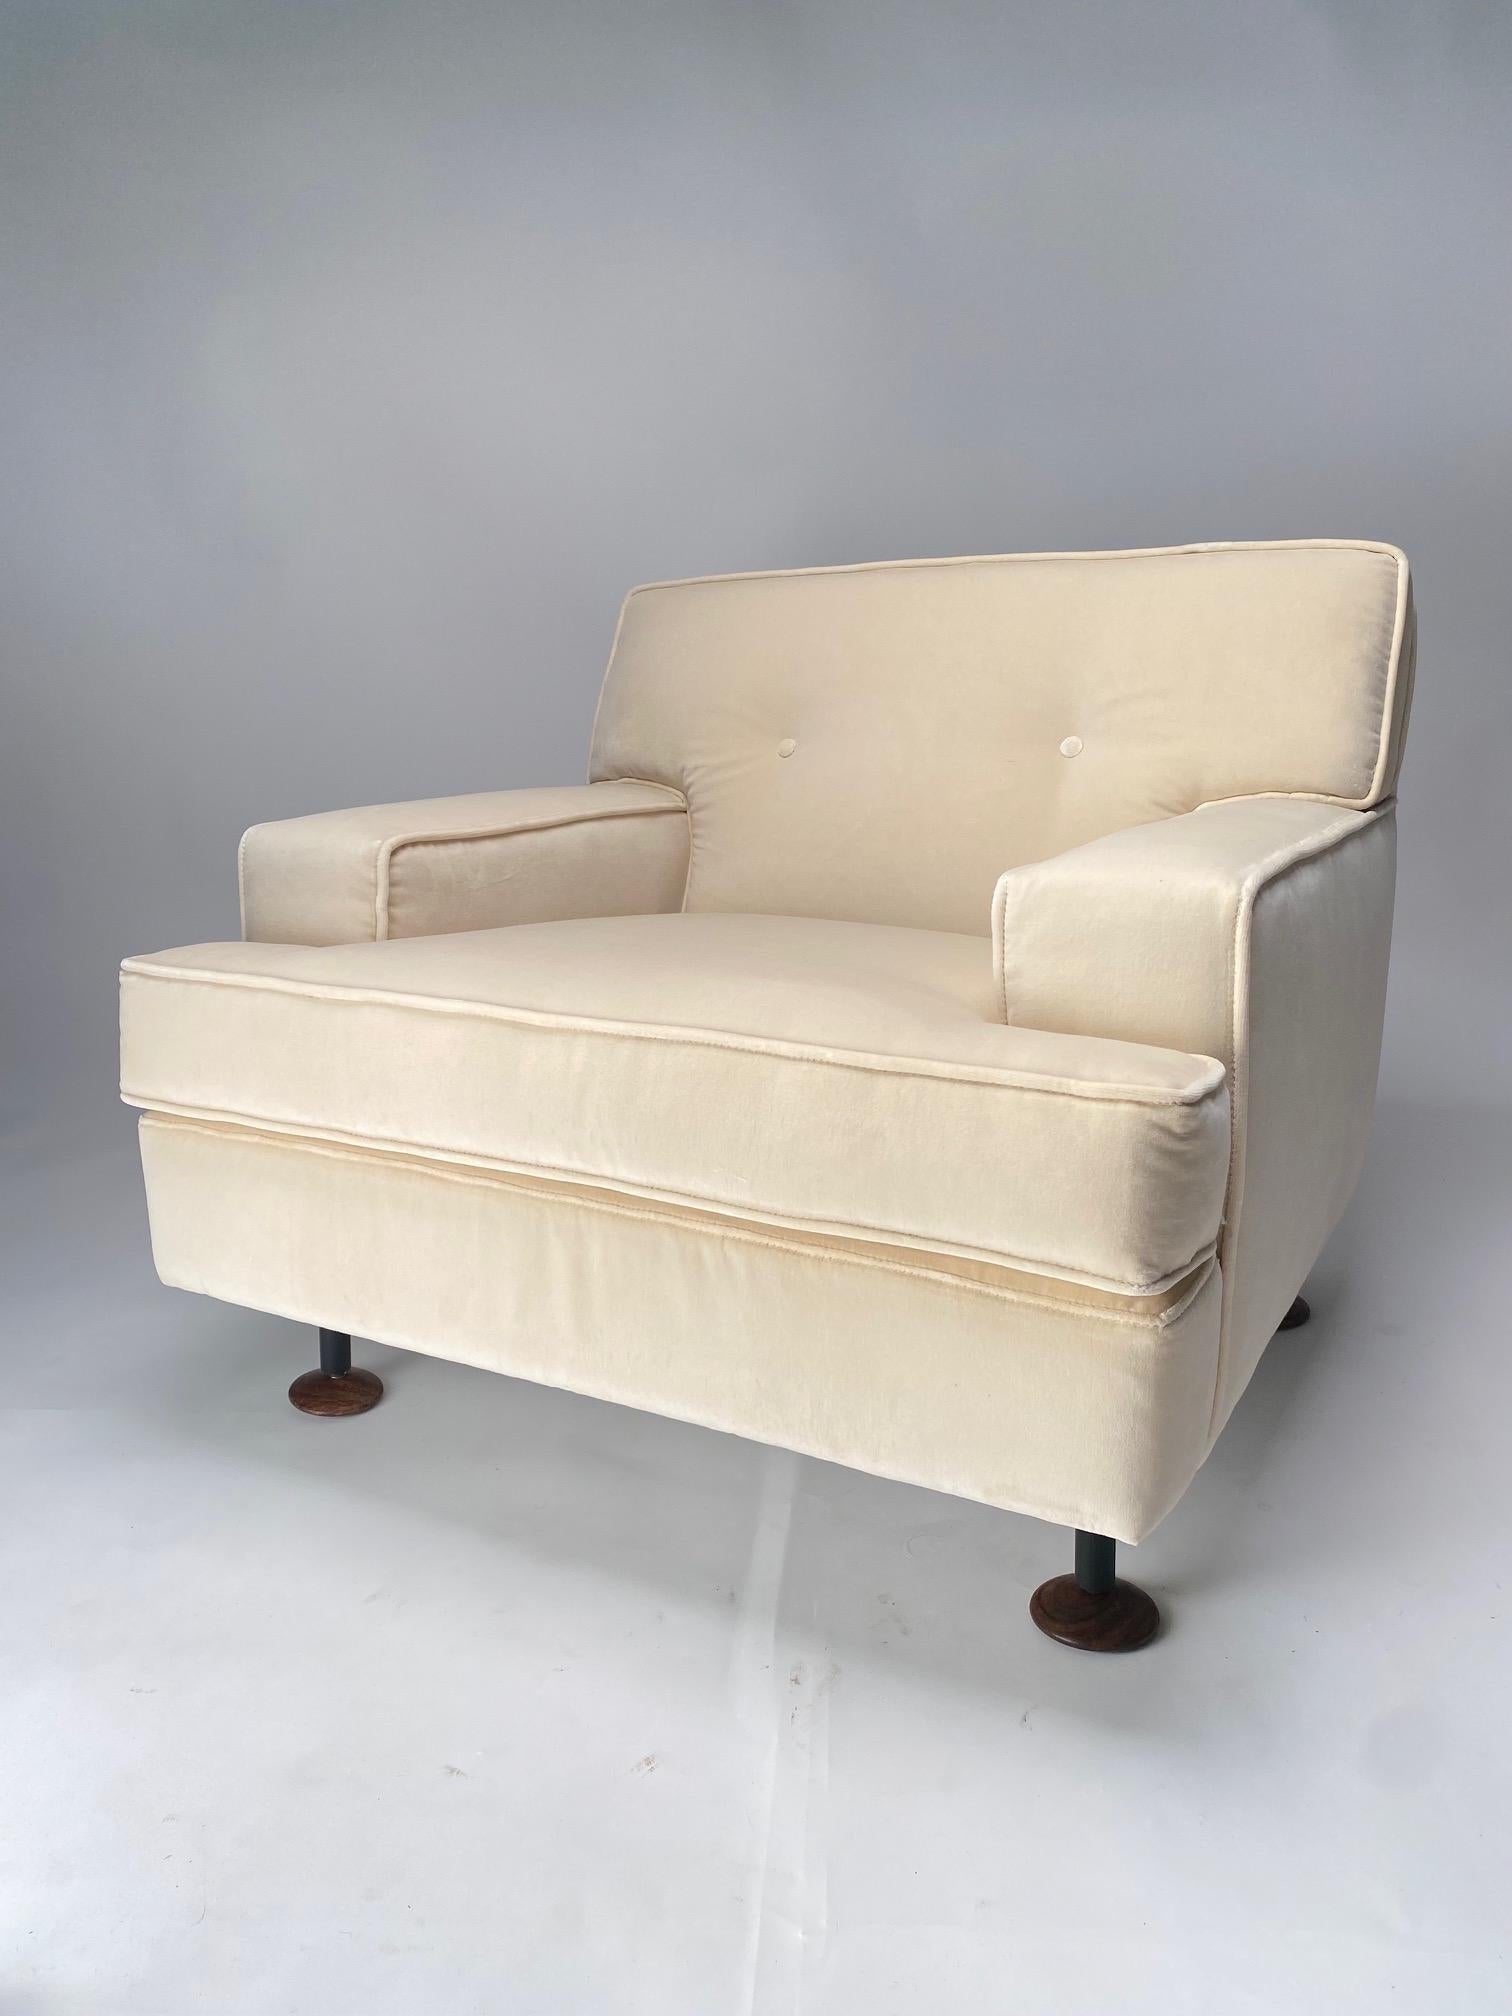 Magnifique paire de fauteuils conçue par l'architecte et designer italien Marco Zanuso pour Arflex. Les chaises sont en excellent état et ont été récemment retapissées en velours blanc. 

Production d'Arfllex en 1962.  Bibliographie : Giuliana